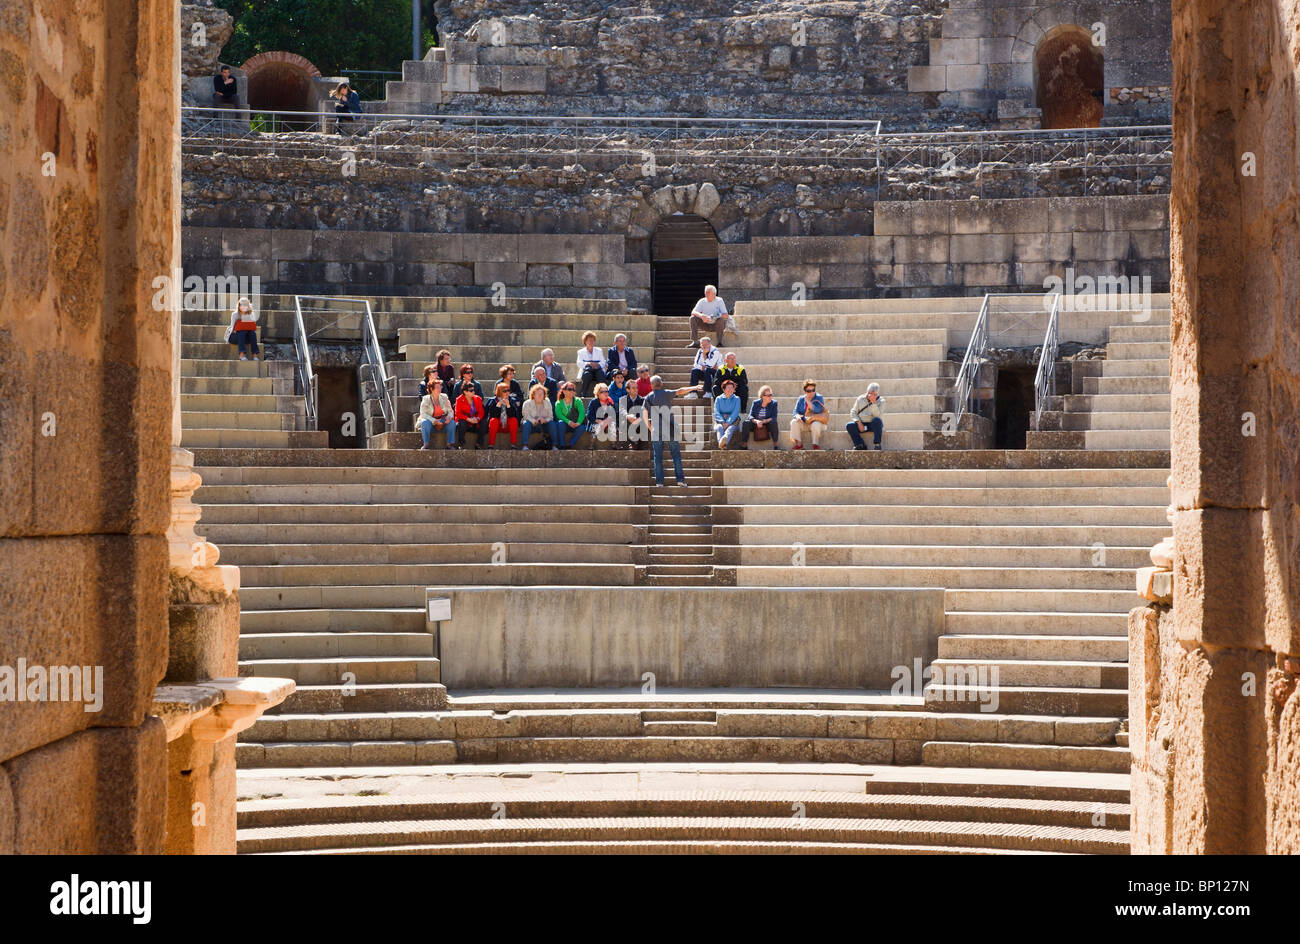 Mérida, provincia de Badajoz, España. El teatro romano, construido en el primer siglo A.C. Los turistas disfrutar de una visita guiada y charla. Foto de stock